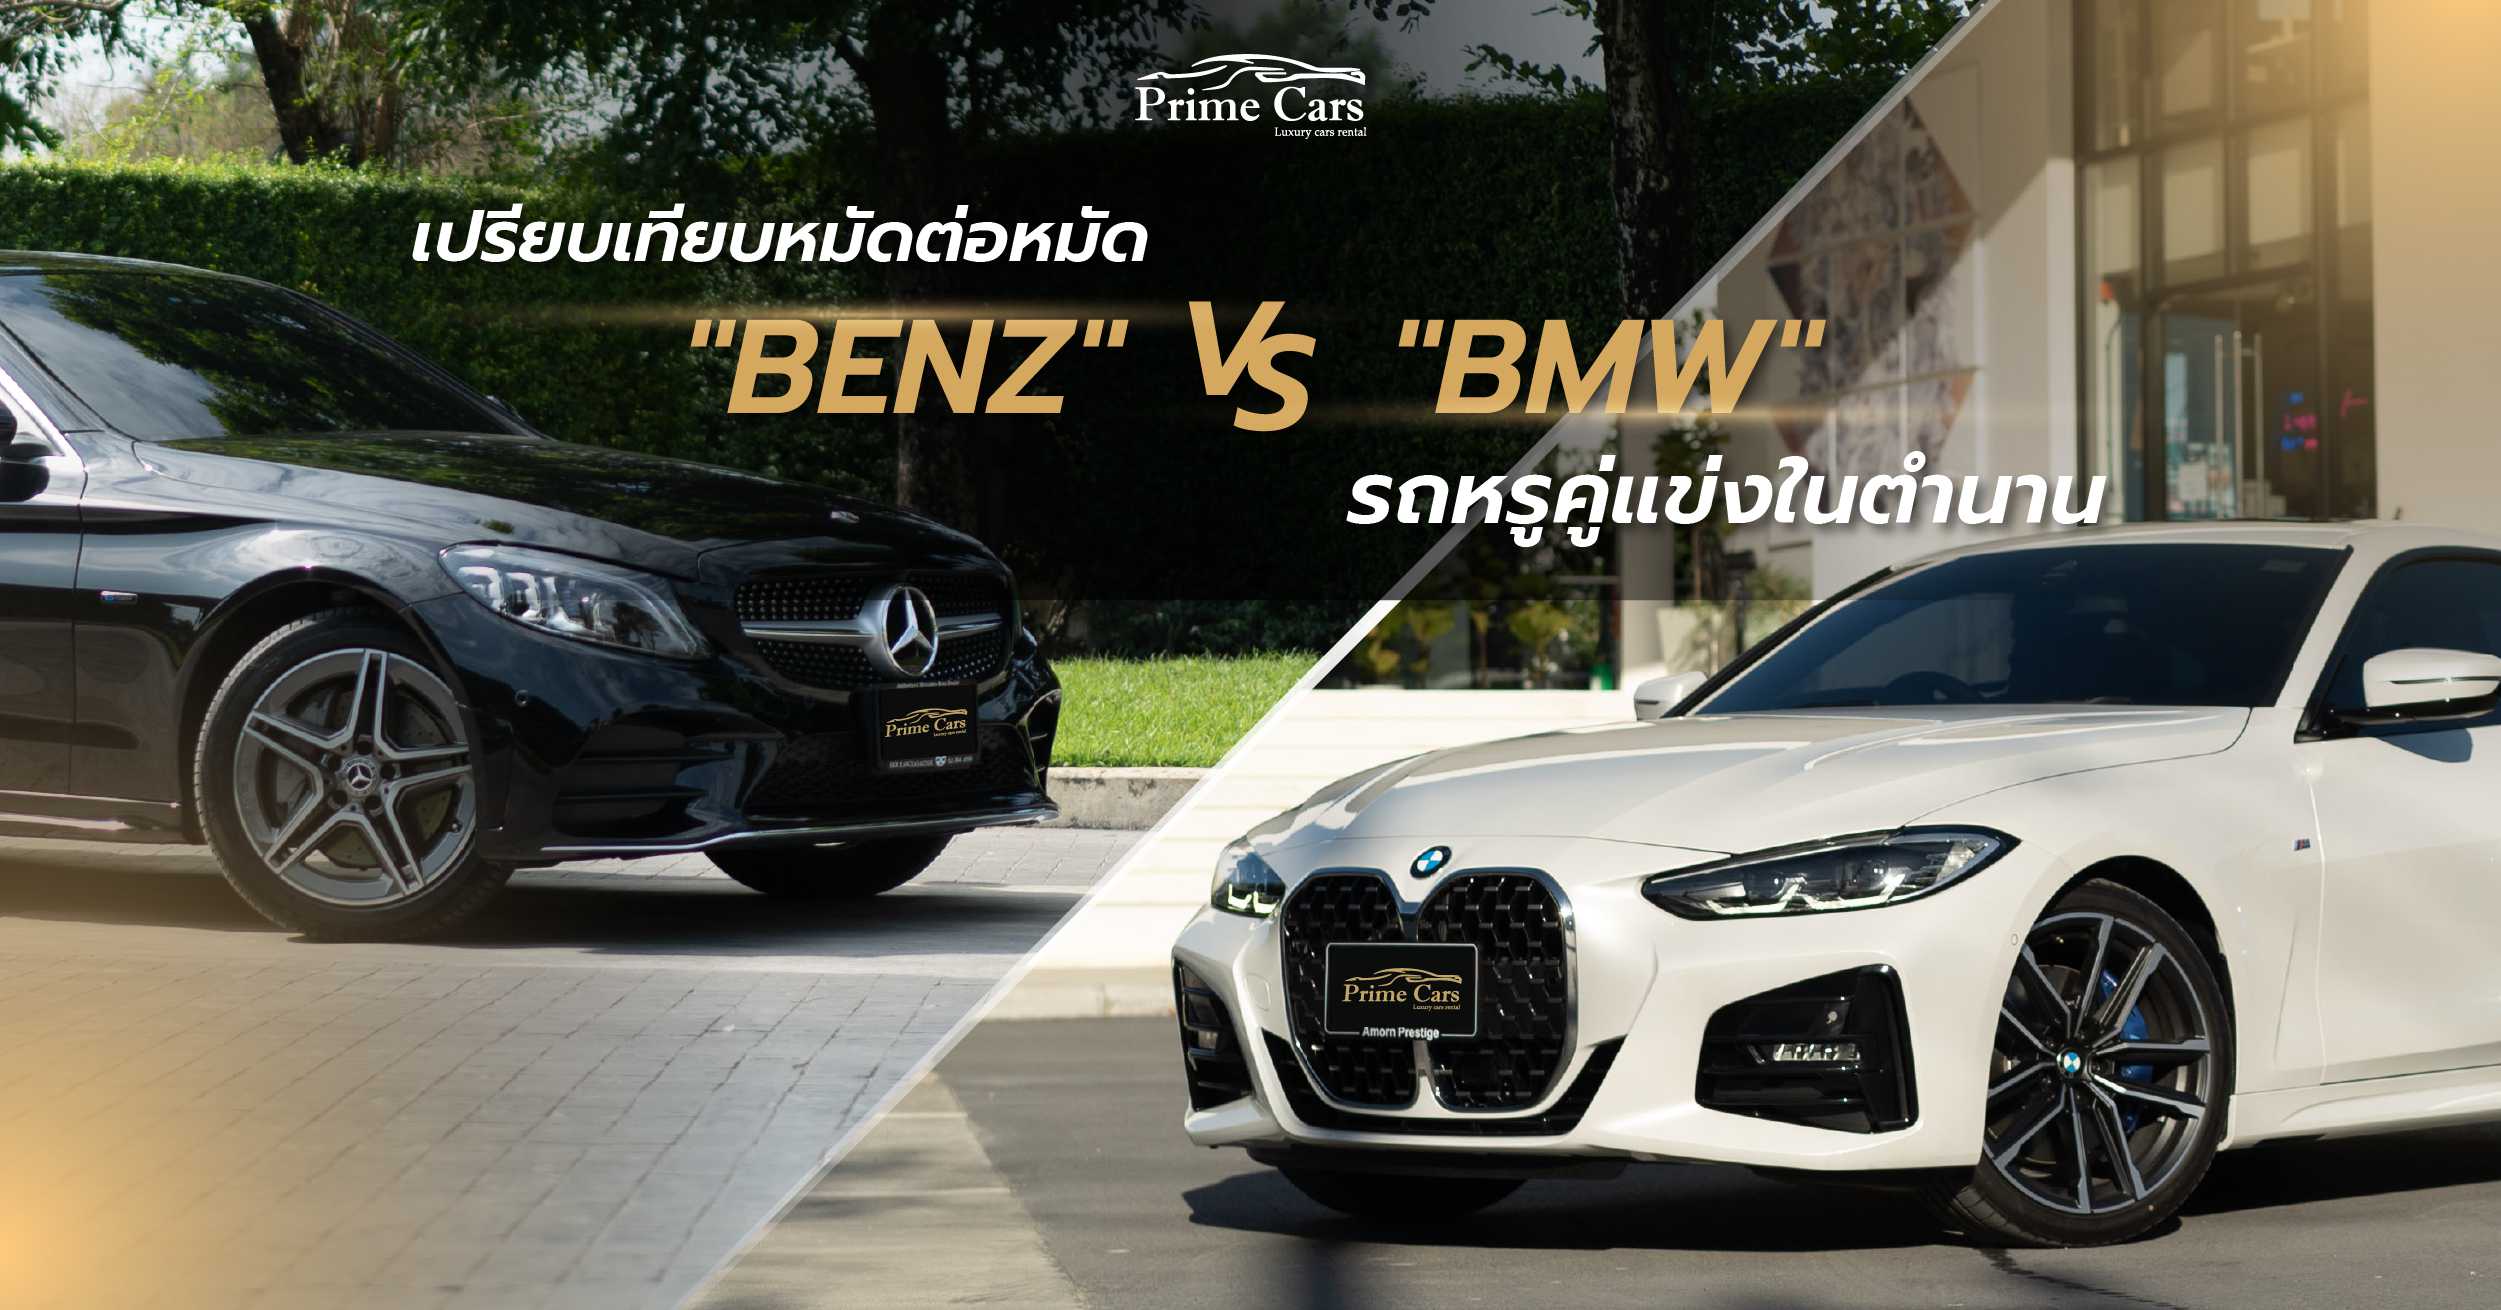 เปรียบเทียบหมัดต่อหมัด Benz vs BMW รถหรูคู่แข่งในตำนาน